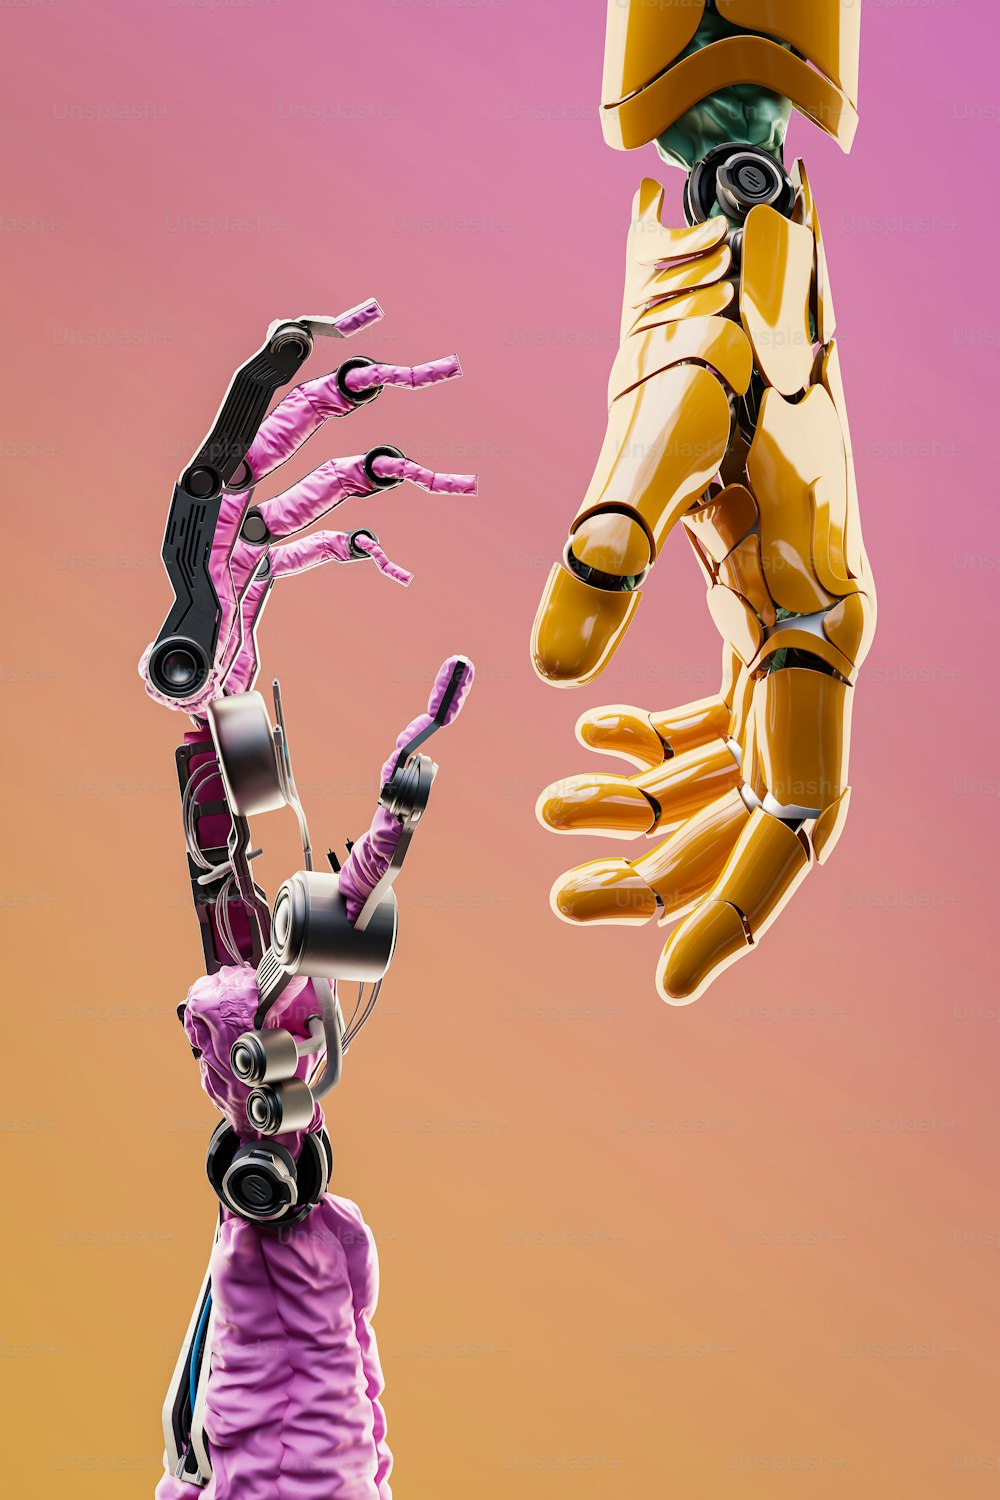 Un robot che tiene una mano umana in aria